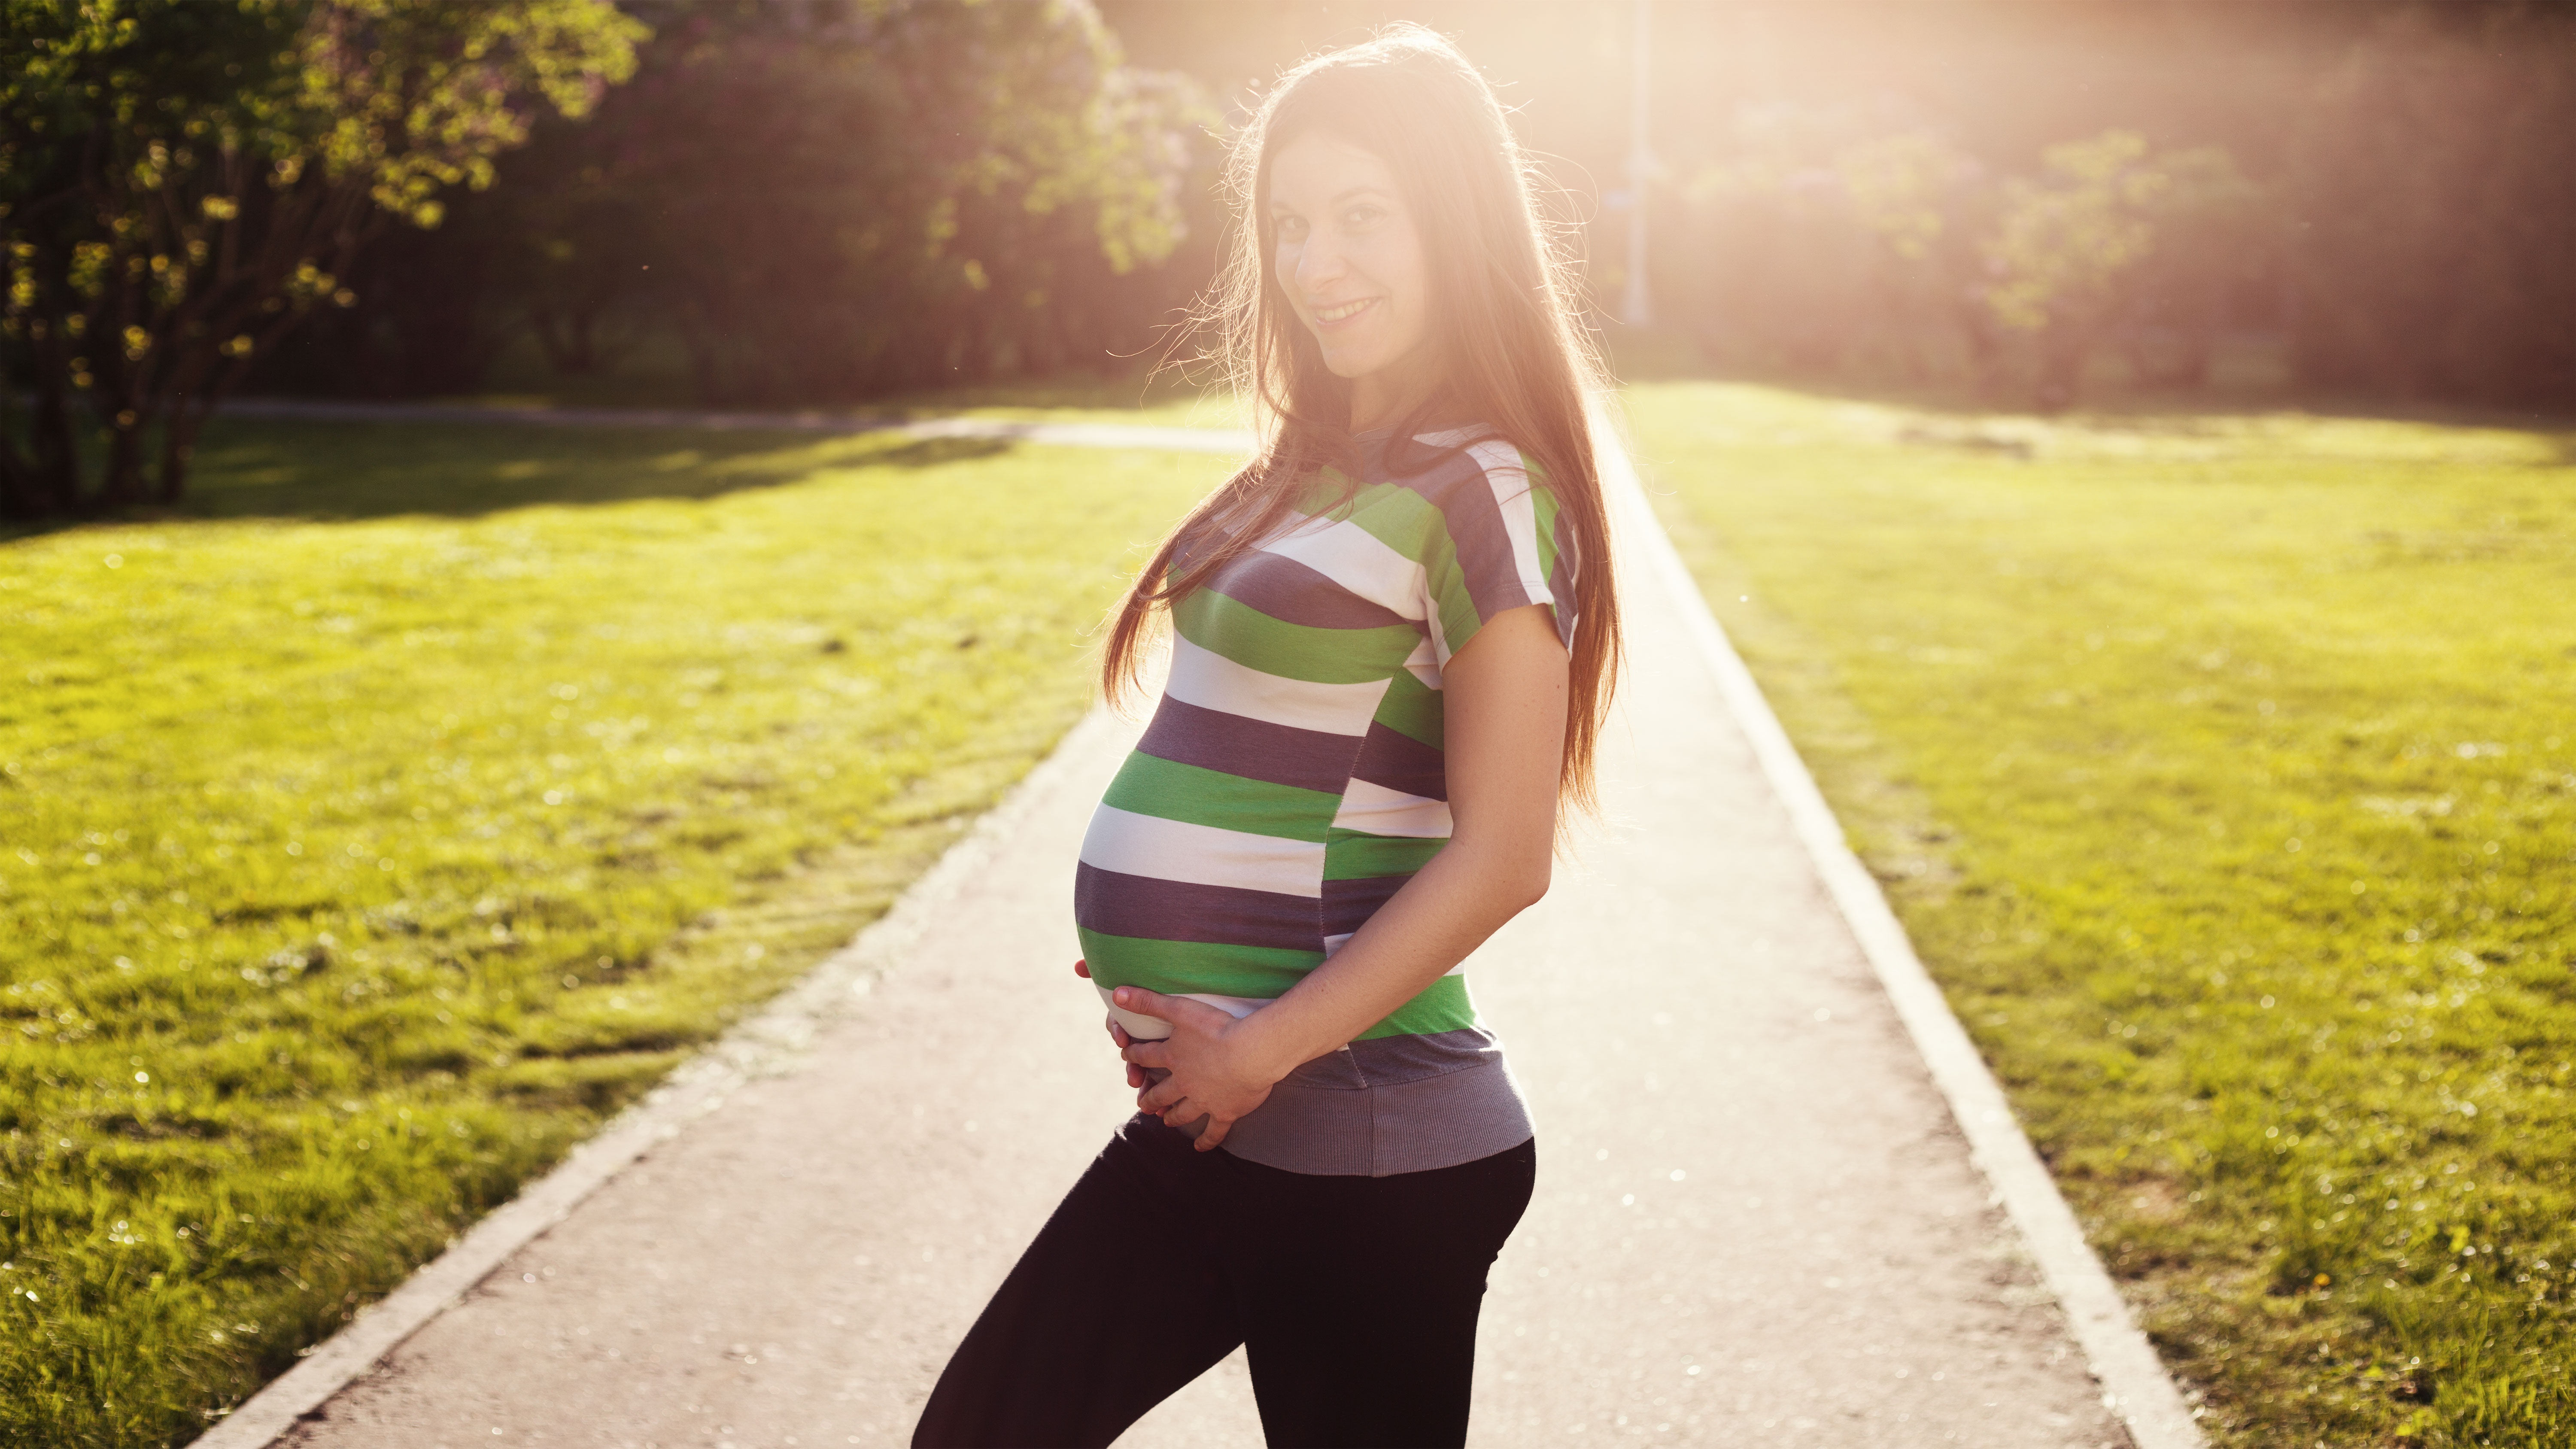 Pregnant woman portrait photo